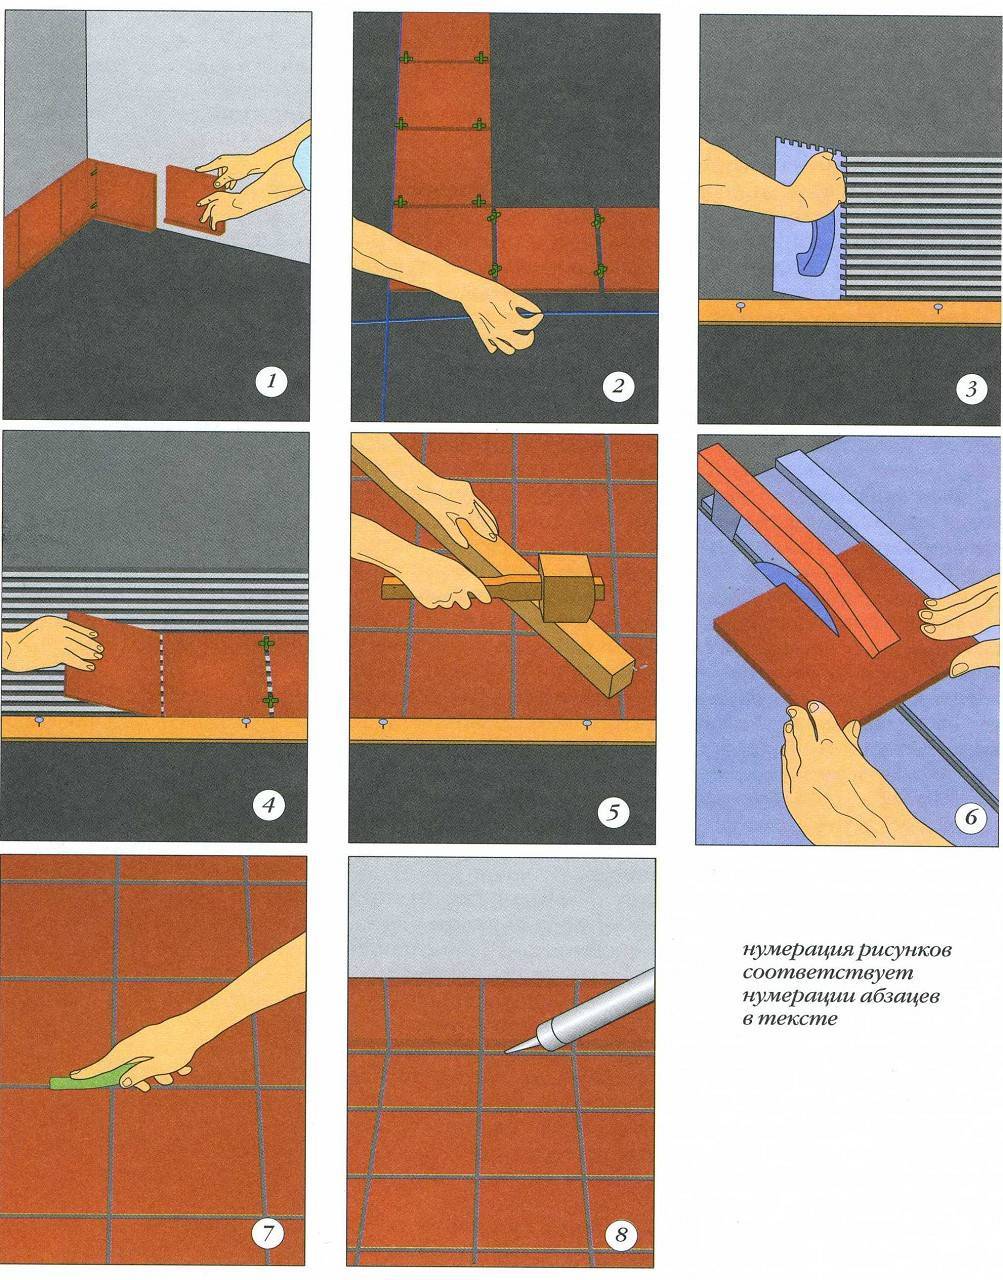 Как класть плитку на стену - пошаговая инструкция для начинающих, кладем плитку своими руками